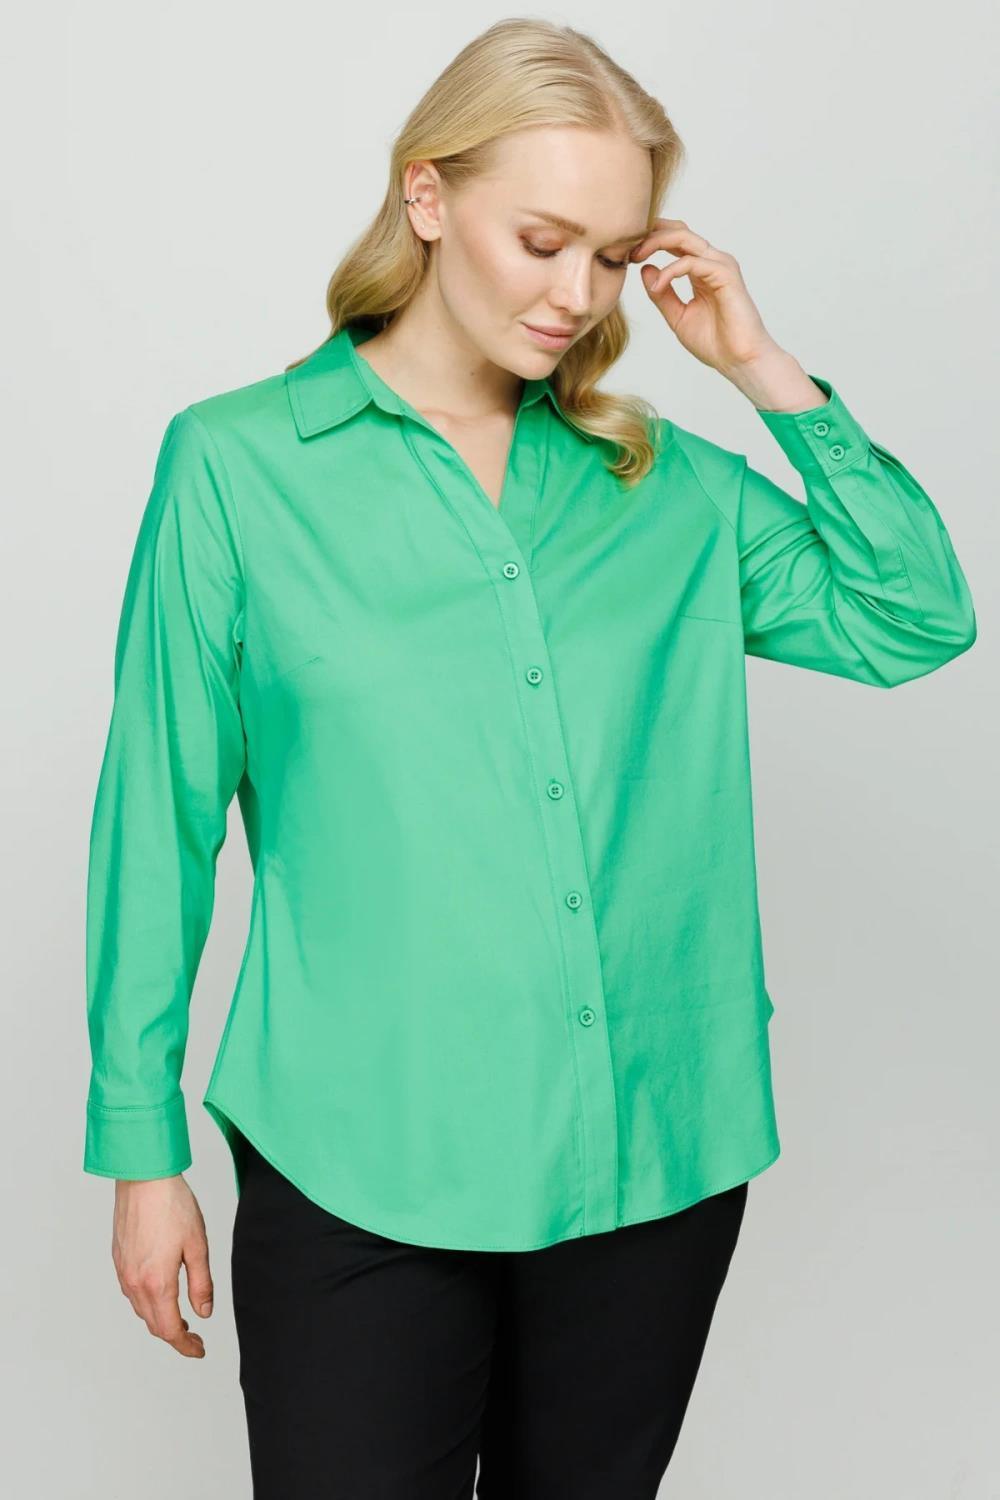 Ekol Klasik Kadın Gömlek - Eser Giyim